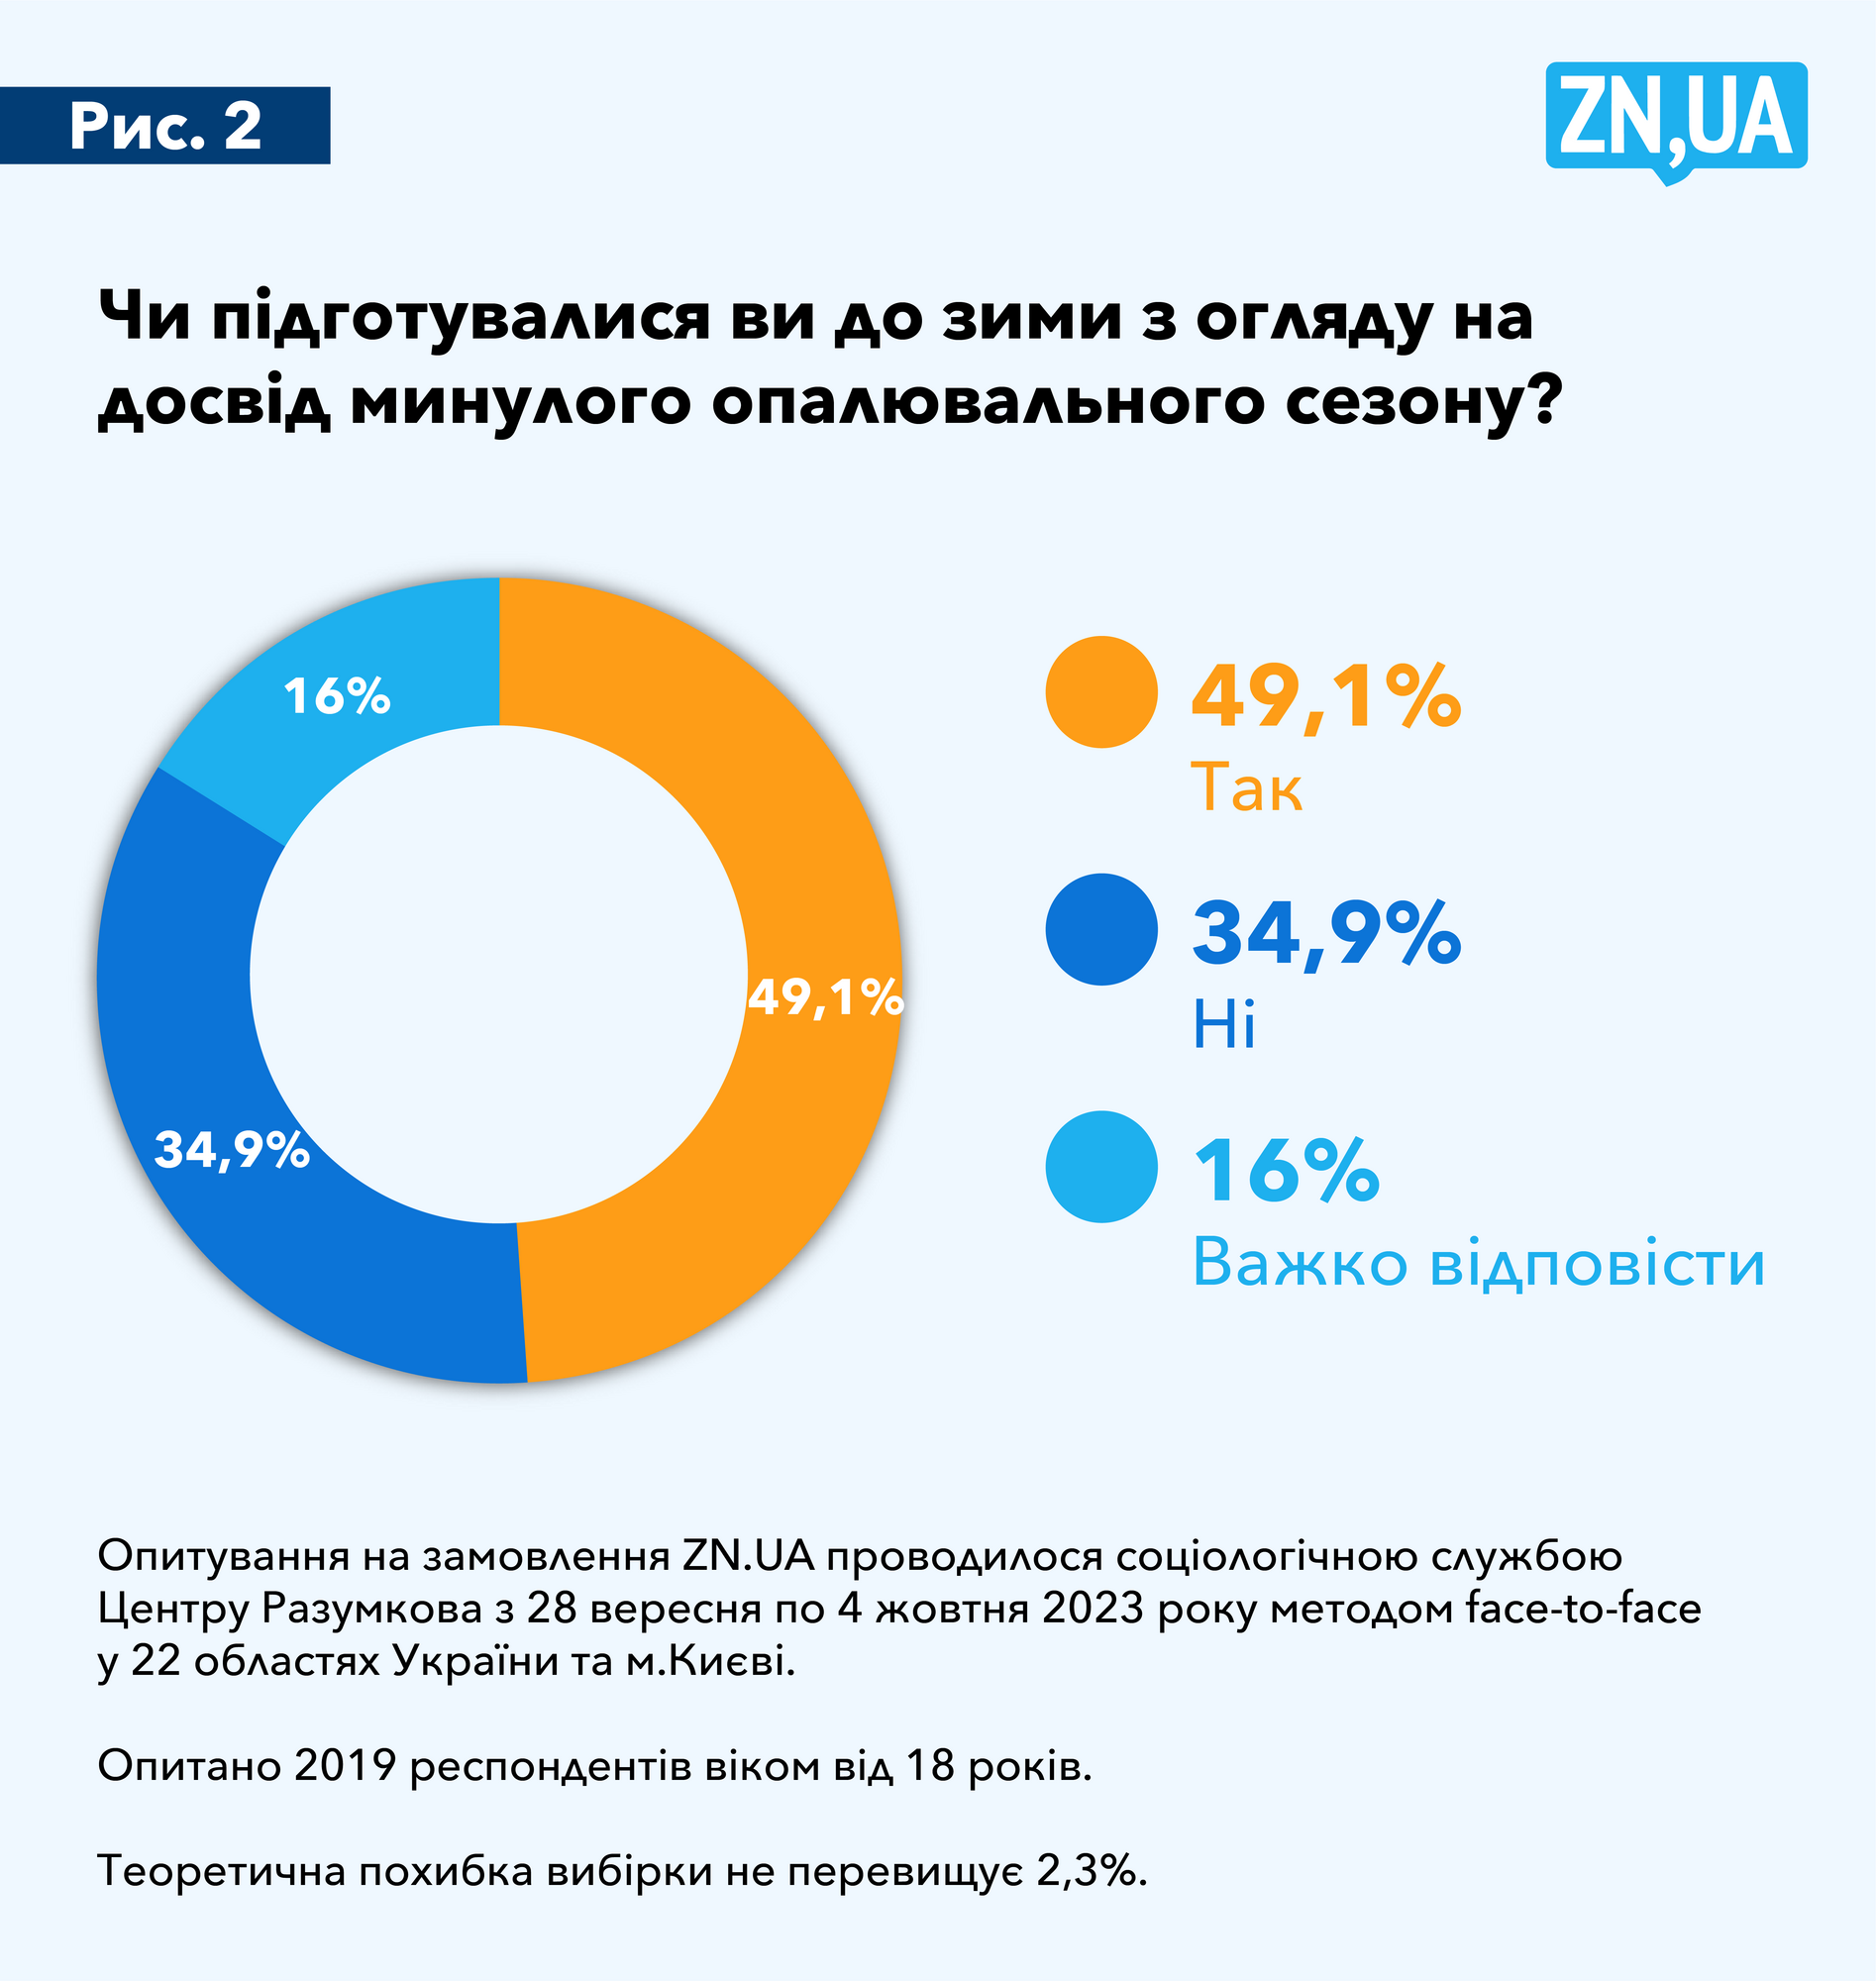 Только 5% украинцев собираются уехать из Украины на зимовку из-за угроз обстрелов инфраструктуры – опрос